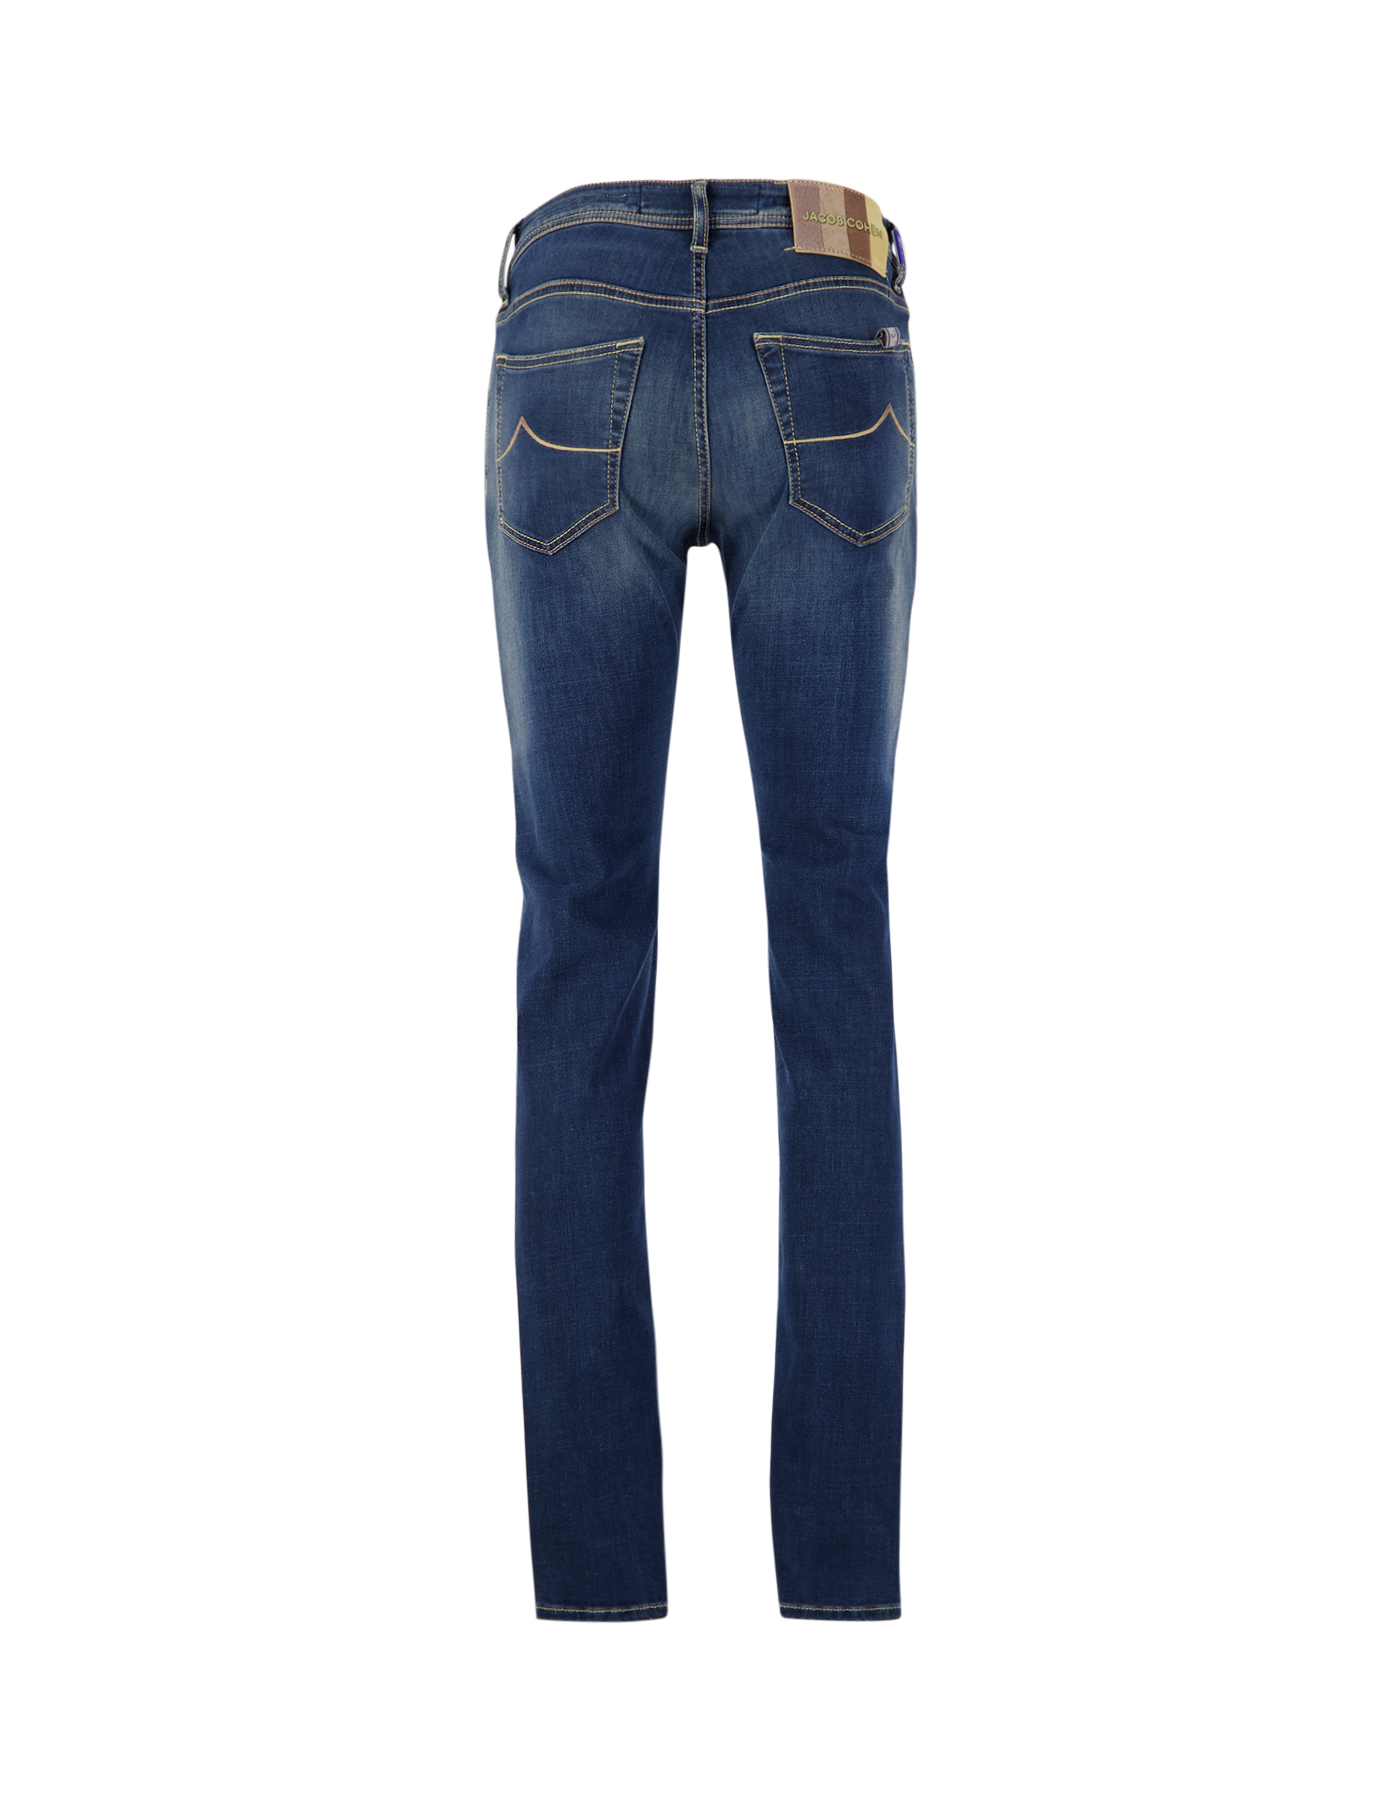 Jacob Cohen Nick Slim Mid-Light Blue Jeans 739D DENIM 2